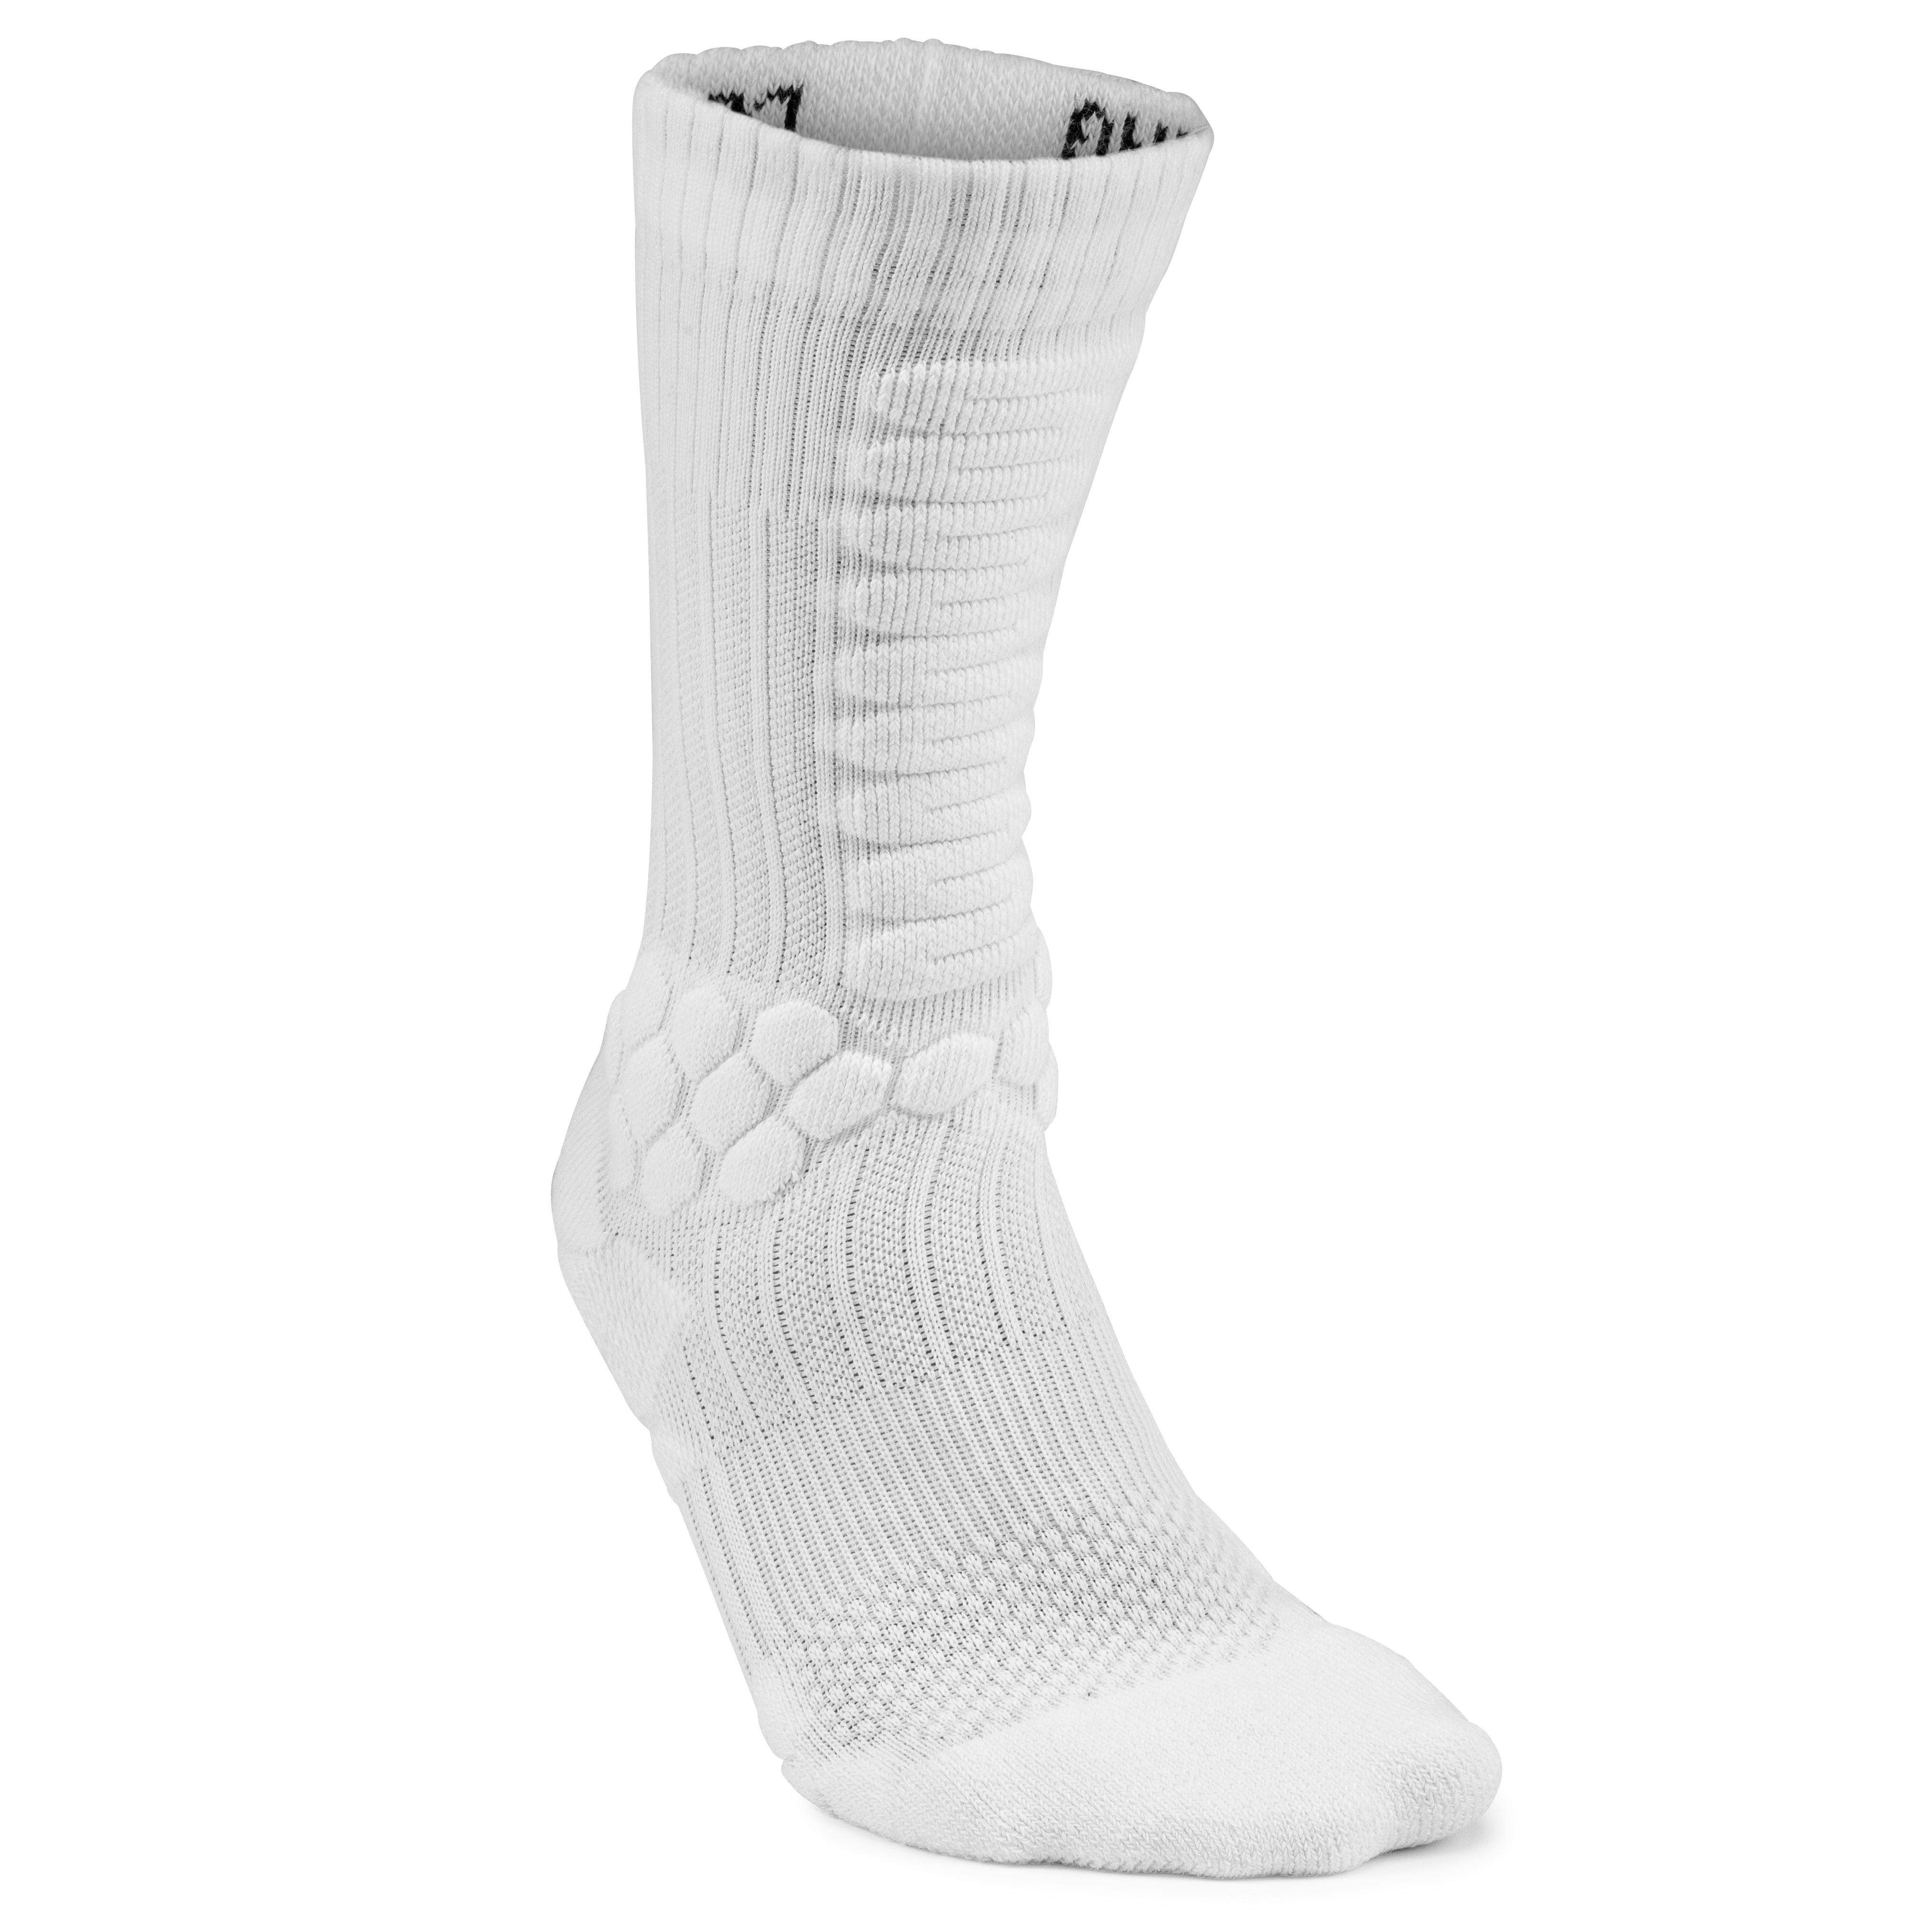 OXELO Skatesocken Socks 500 Mid weiss 39/42